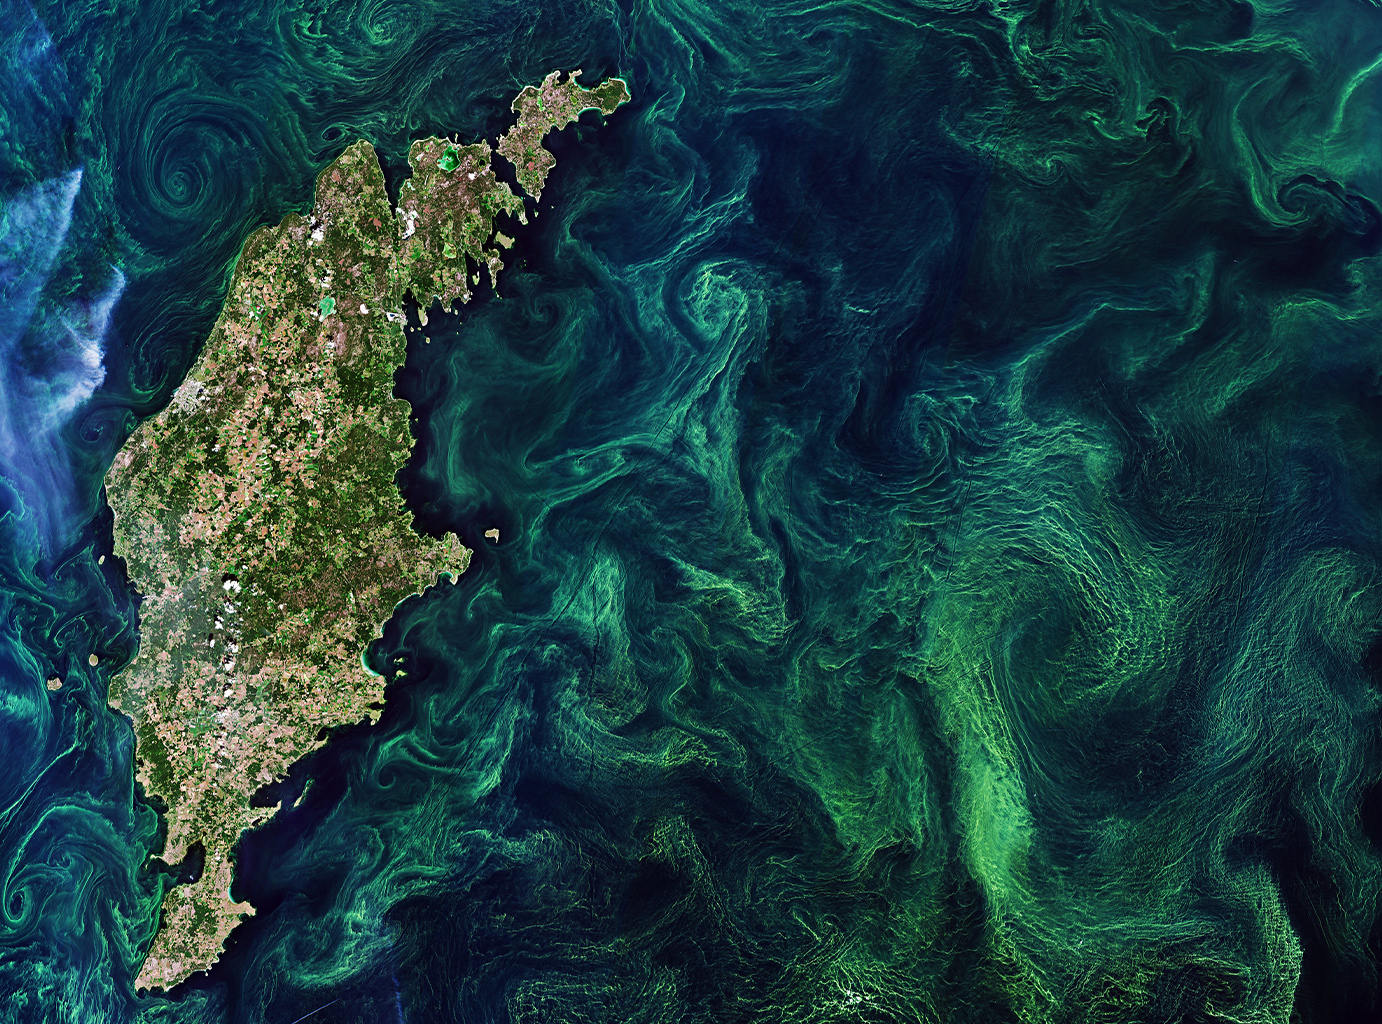 Seasonal green algae blooms in the ocean